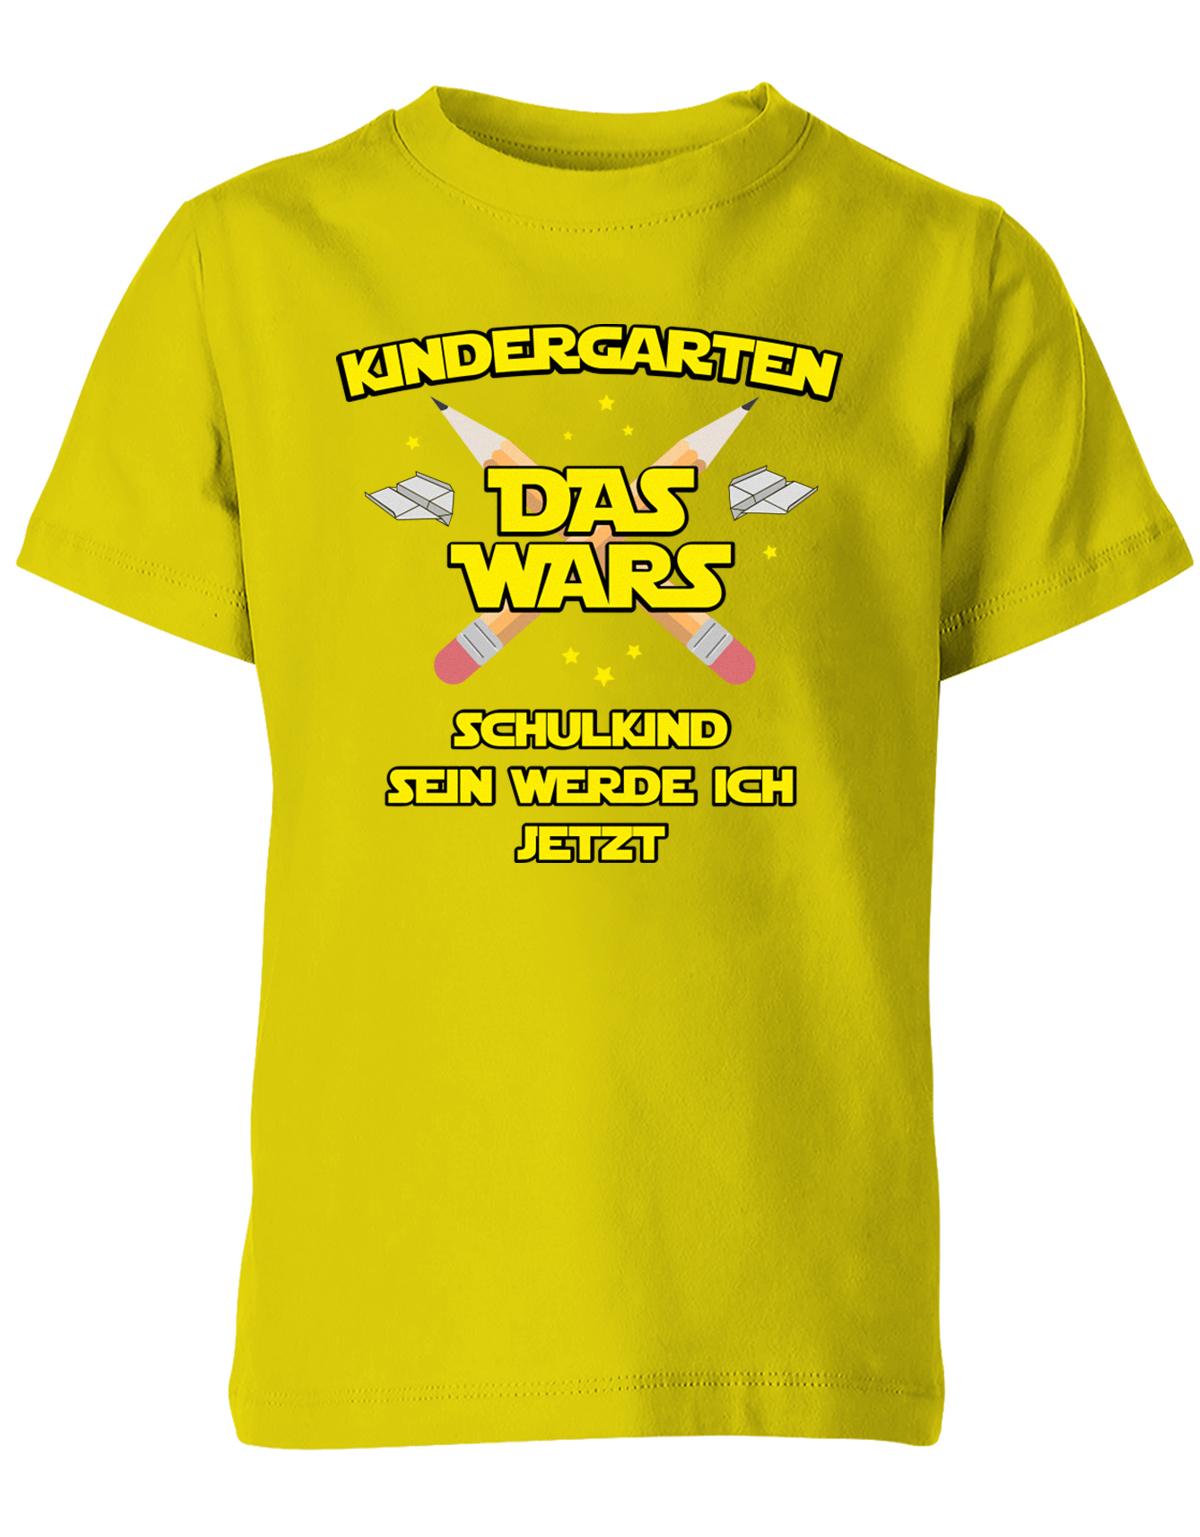 Kindergarten Das Wars Schulkind sein werde ich jetzt - Kita Abgänger Shirt Gelb